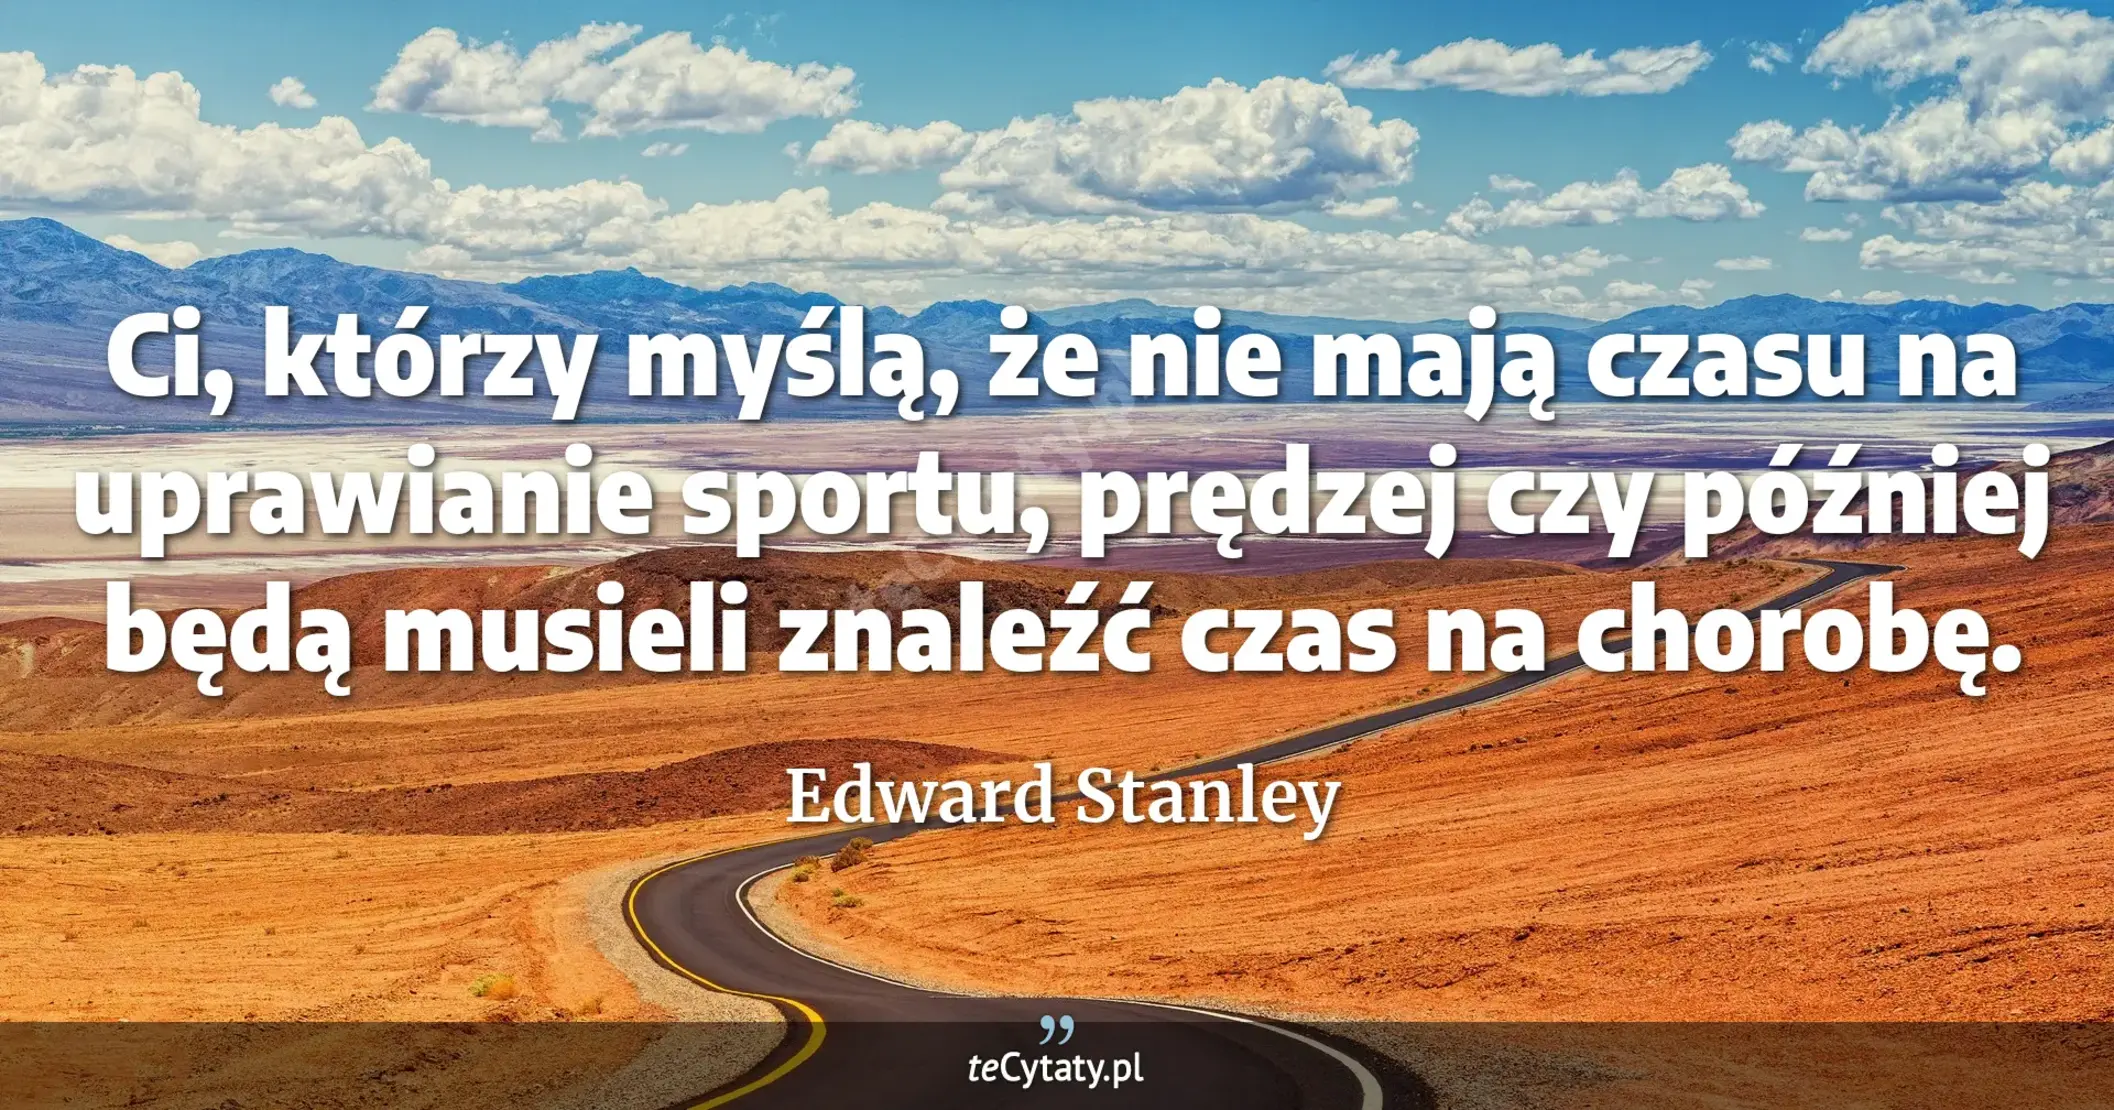 Ci, którzy myślą, że nie mają czasu na uprawianie sportu, prędzej czy później będą musieli znaleźć czas na chorobę. - Edward Stanley